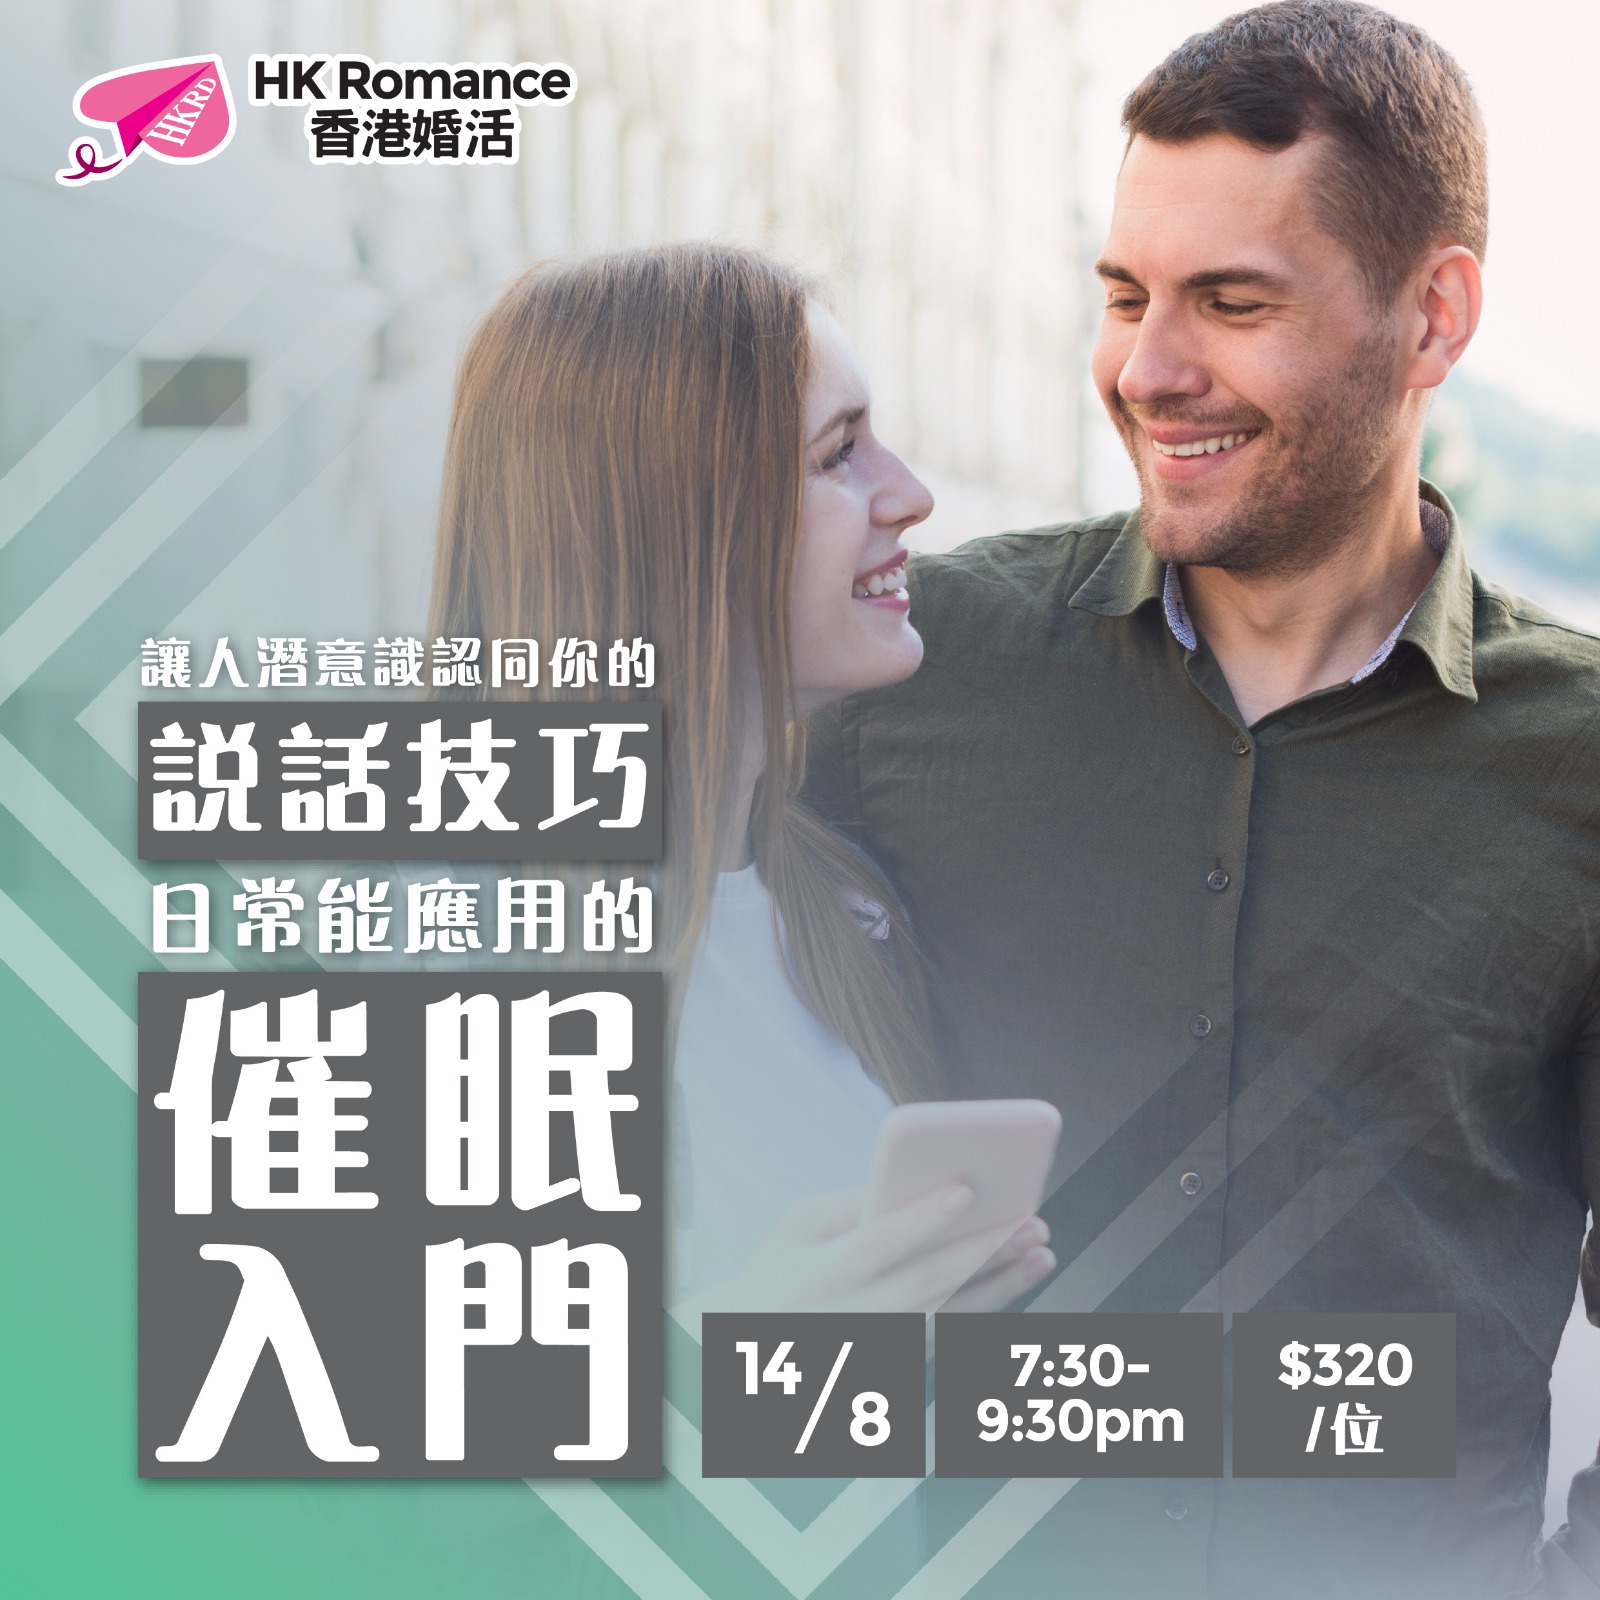 (完滿舉行) 讓人潛意識認同你的說話技巧 ‧ 日常能應用的催眠入門 - 2019年8月21日 香港交友約會業協會 Hong Kong Speed Dating Federation - Speed Dating , 一對一約會, 單對單約會, 約會行業, 約會配對